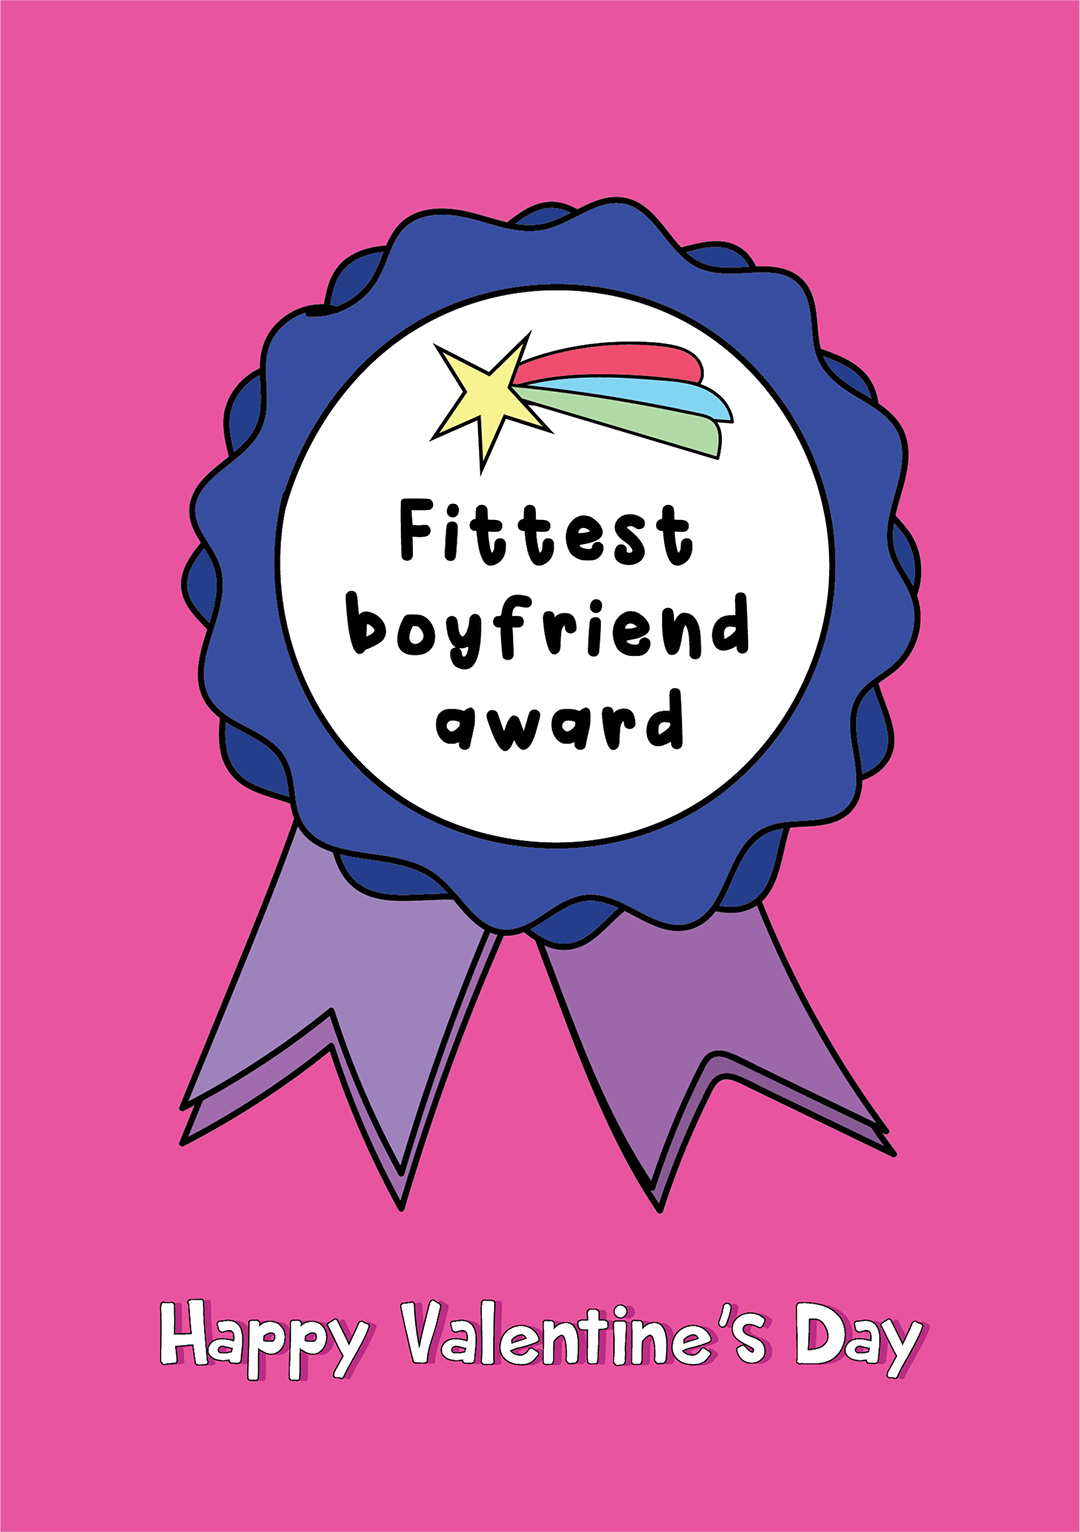 Fittest Boyfriend Award - Valentine's Day Card